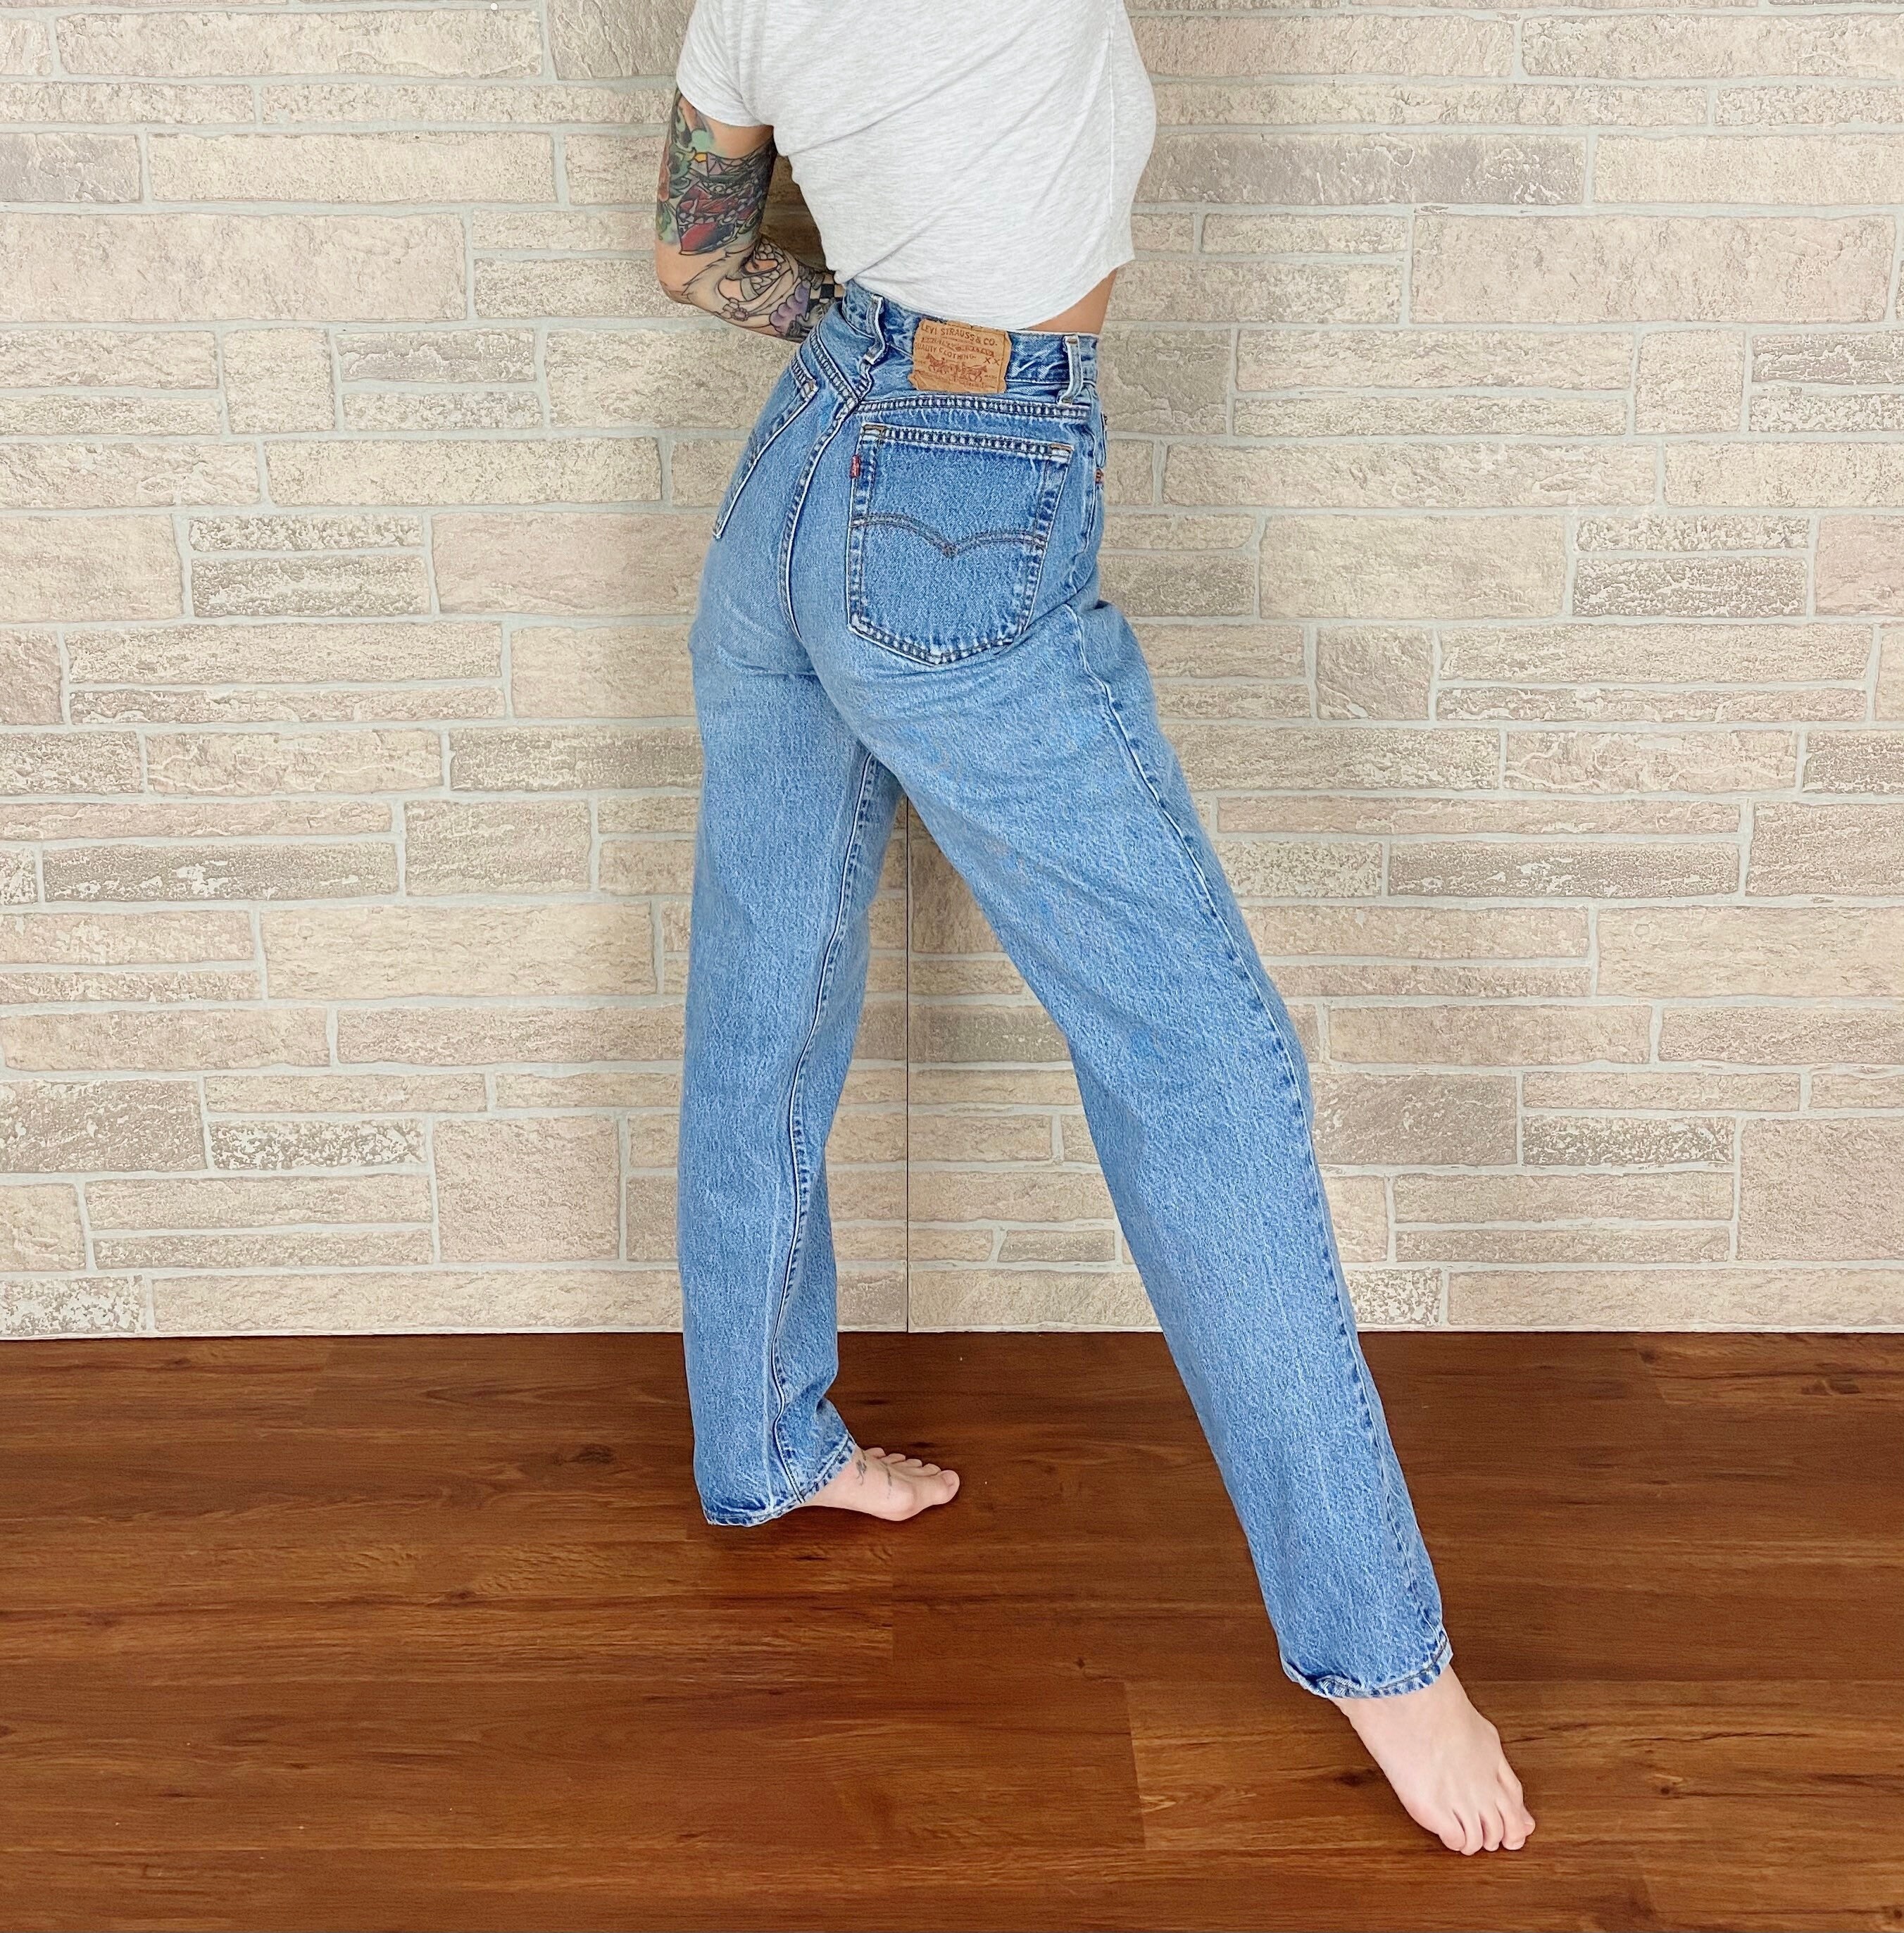 Levi's 501 Vintage Jeans / Size 28 29